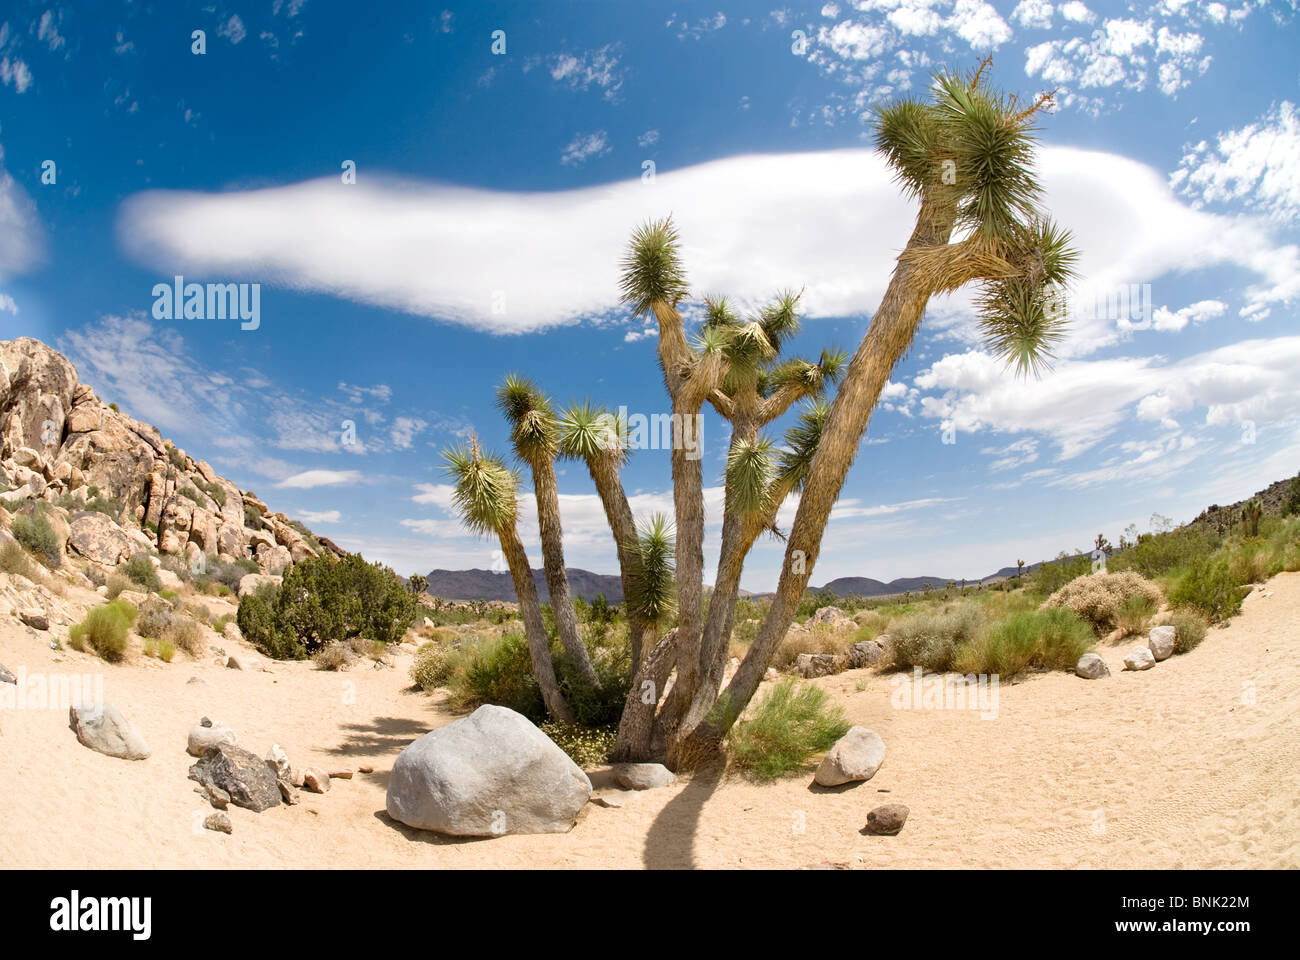 Joshua Baum mit einer erstaunlichen Wolkengebilde während eines heißen, sonnigen Tag in der Wüste. Stockfoto